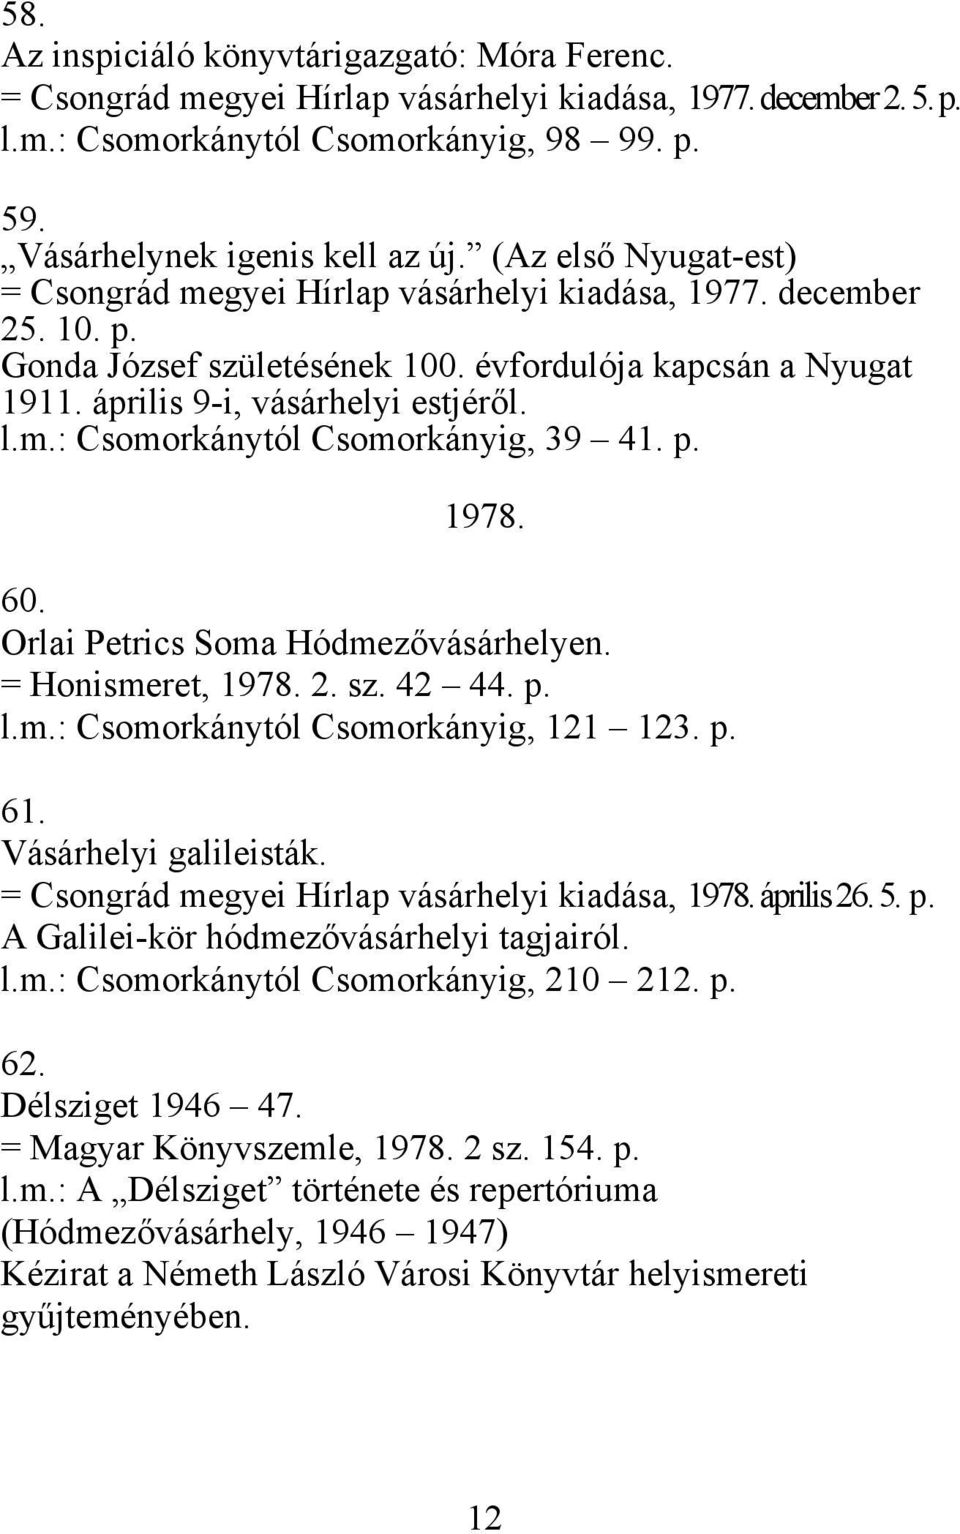 p. 1978. 60. Orlai Petrics Soma Hódmezővásárhelyen. = Honismeret, 1978. 2. sz. 42 44. p. l.m.: Csomorkánytól Csomorkányig, 121 123. p. 61. Vásárhelyi galileisták.